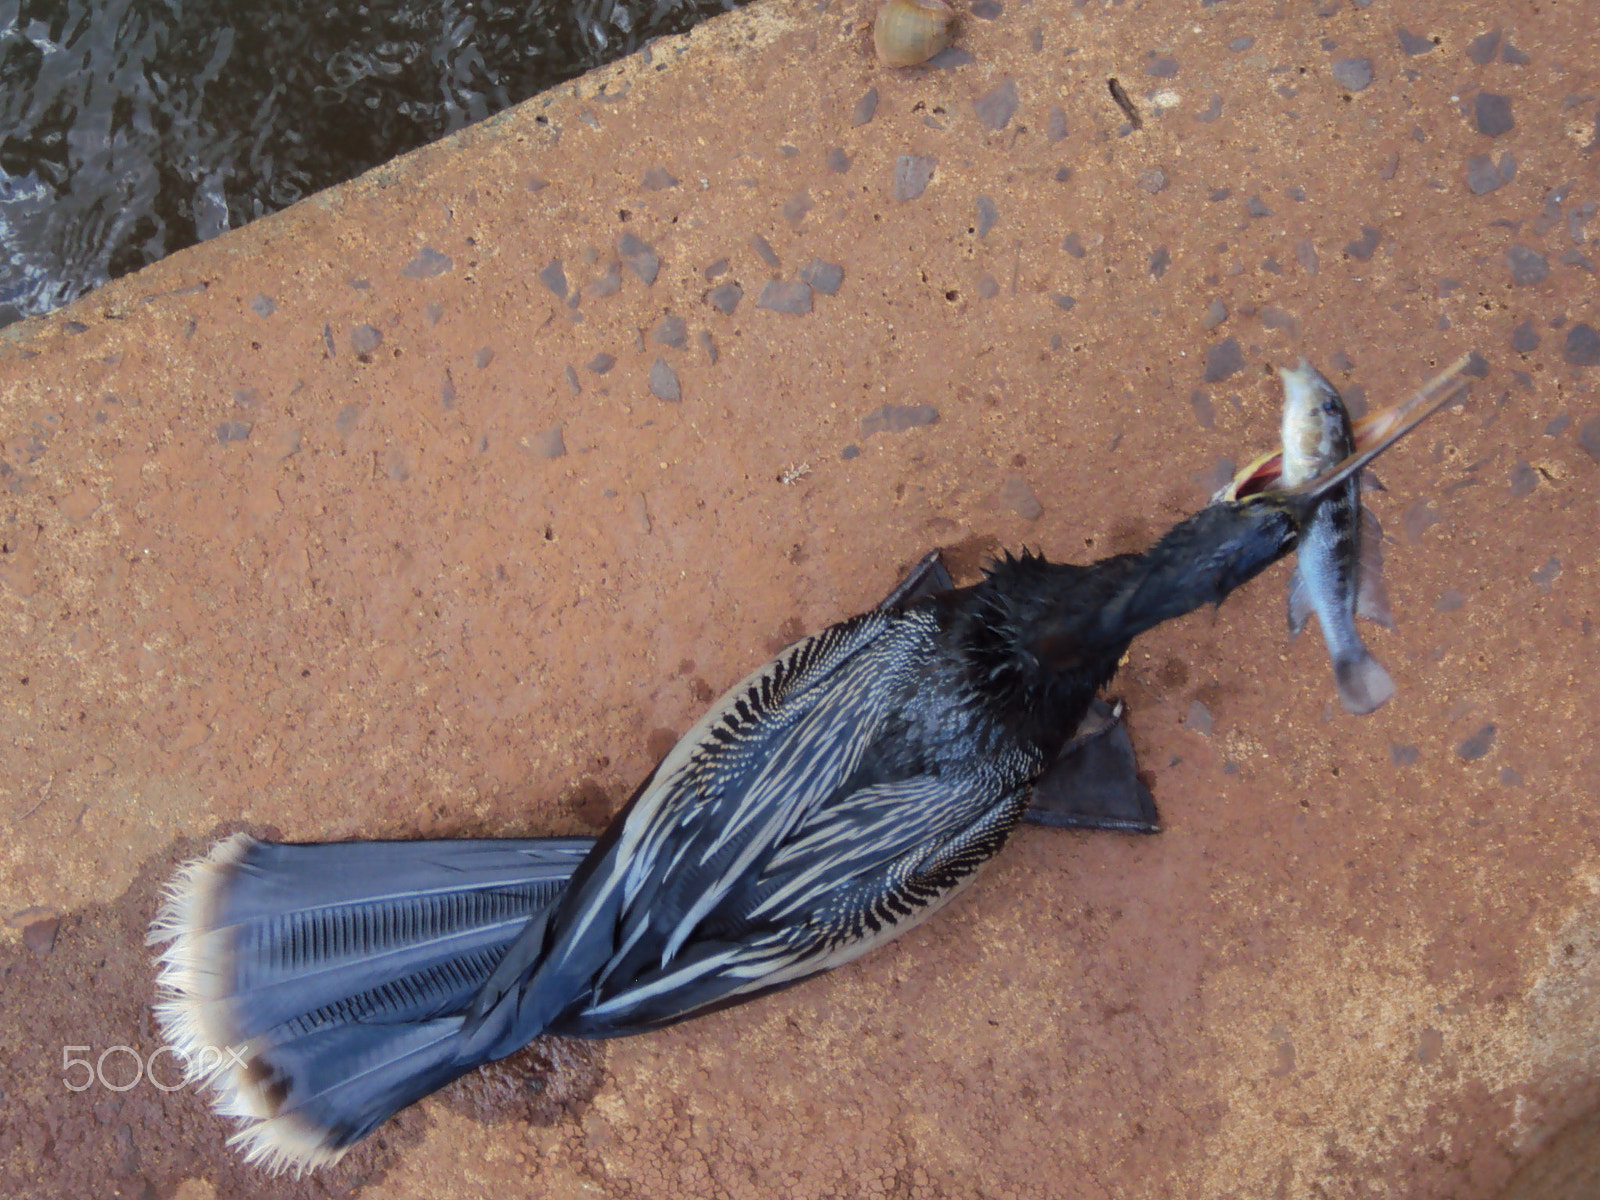 Sony DSC-W180 sample photo. Ave degustando um peixe em cataratas foz do iguaçu - brasil photography